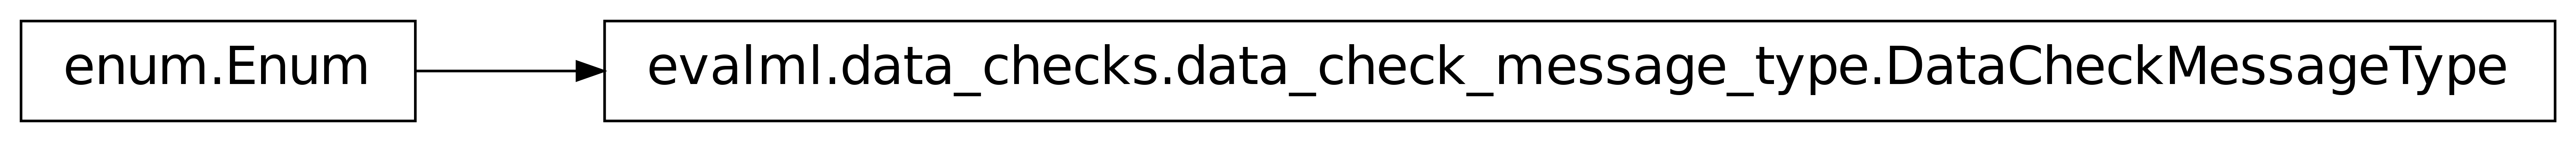 Inheritance diagram of DataCheckMessageType